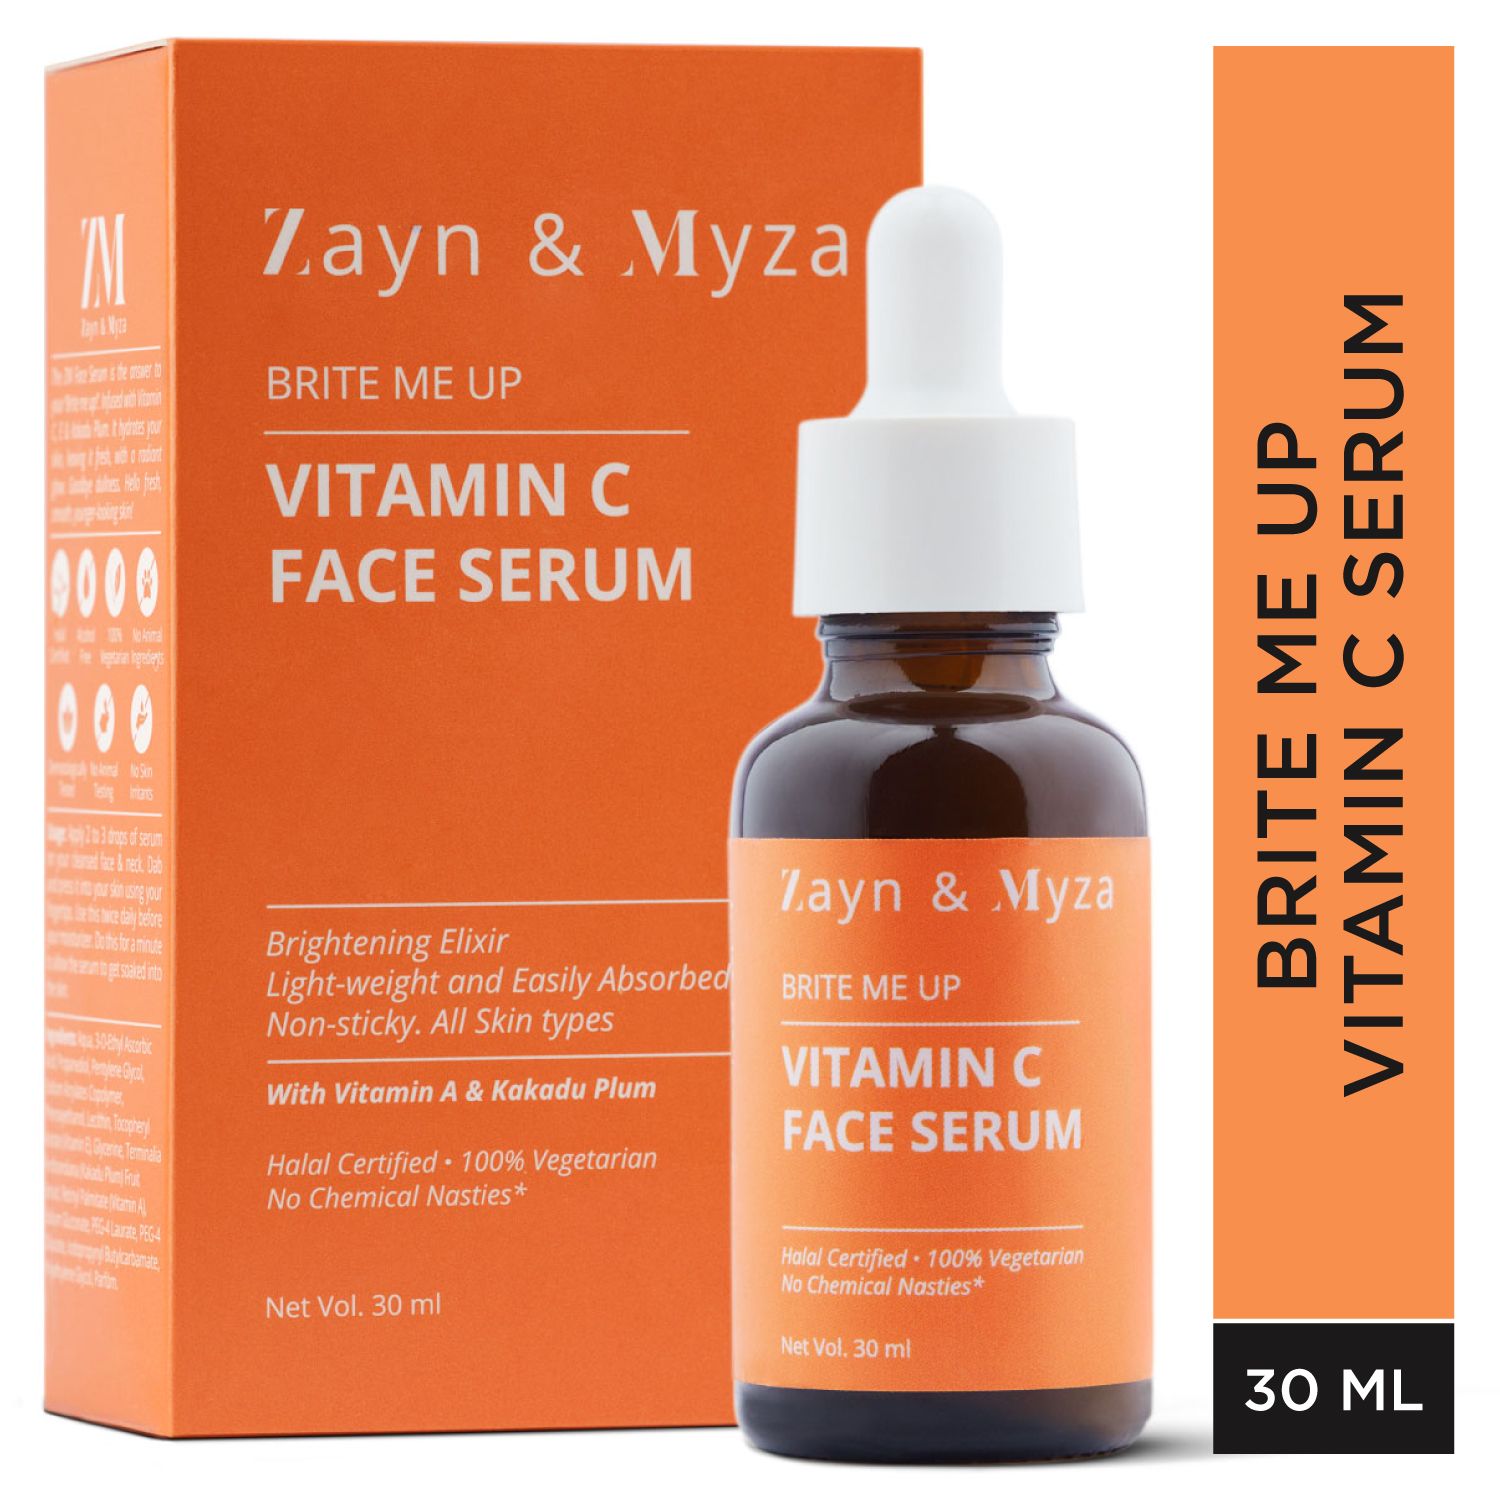 Zayn & Myza Vitamin C Face Serum